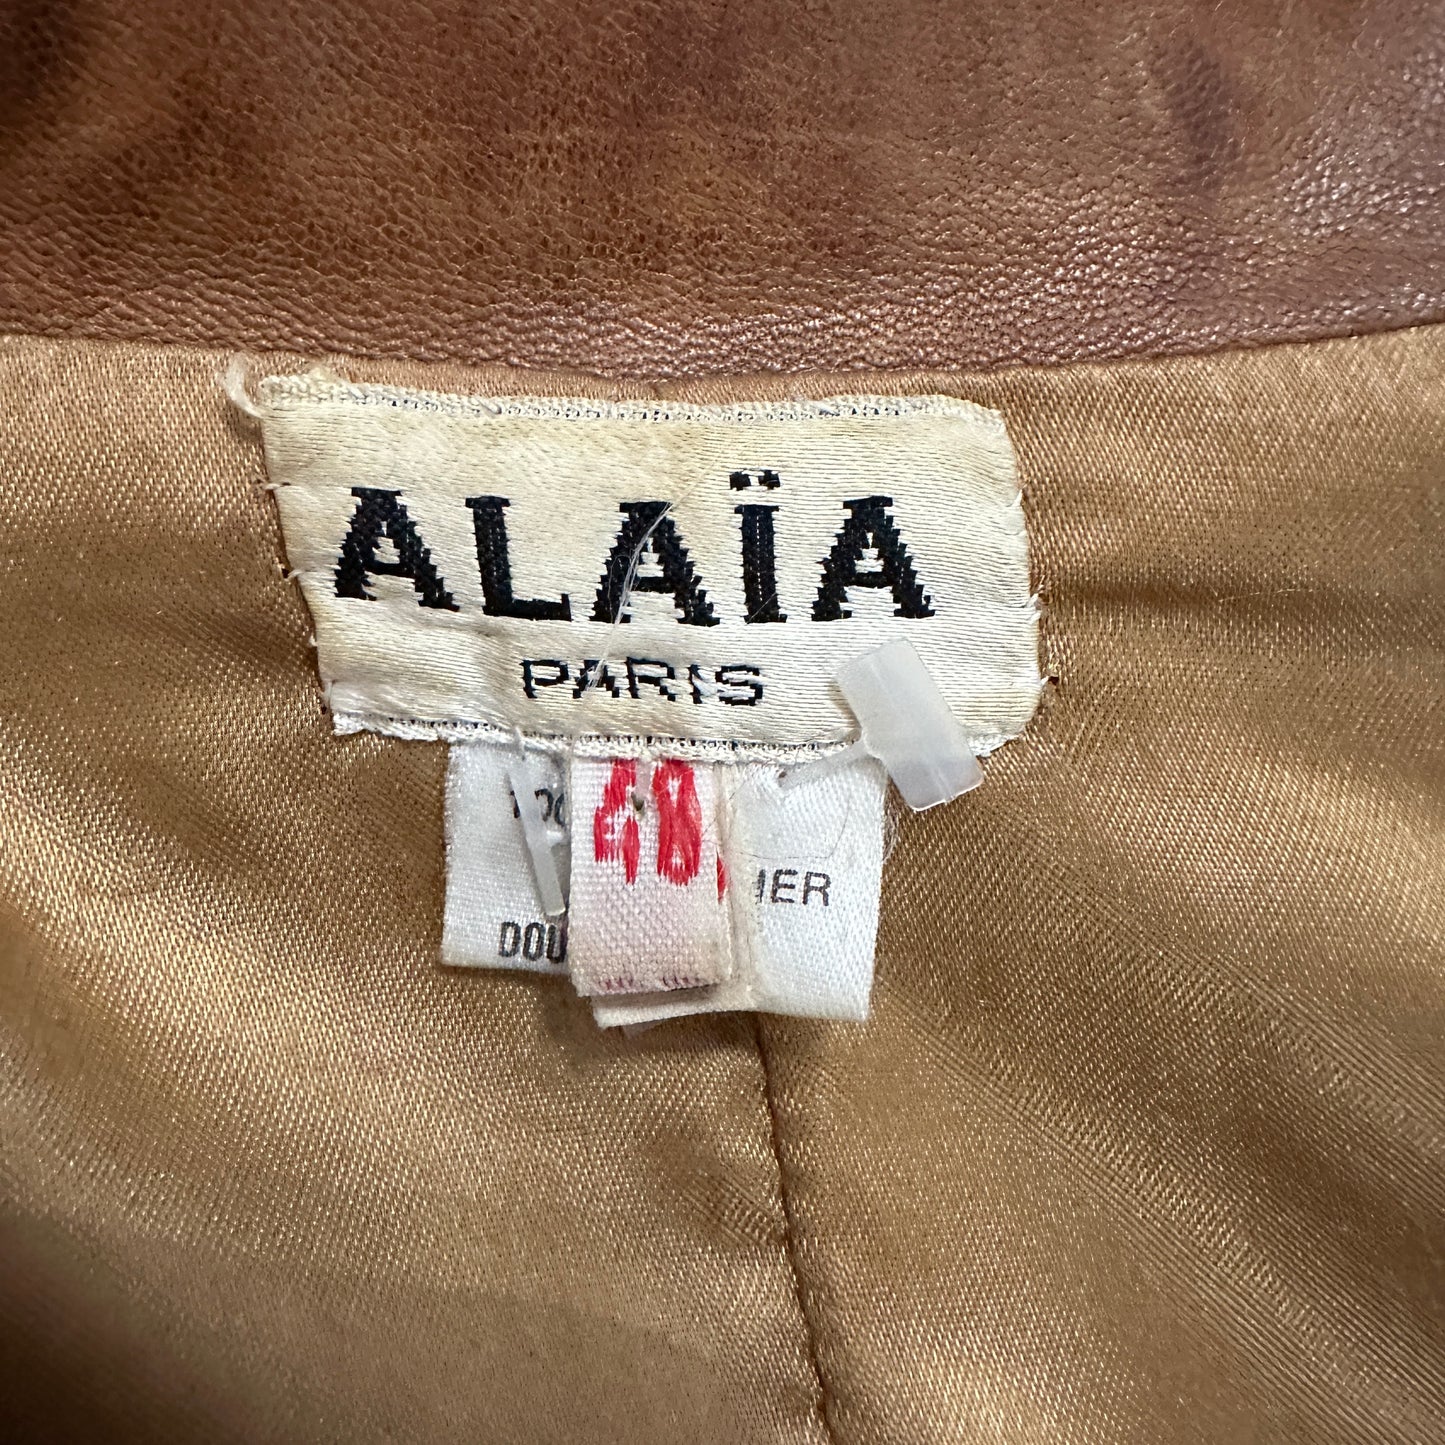 Azzedine Alaia 1980’s Tan Leather Dress / Blazer Jacket